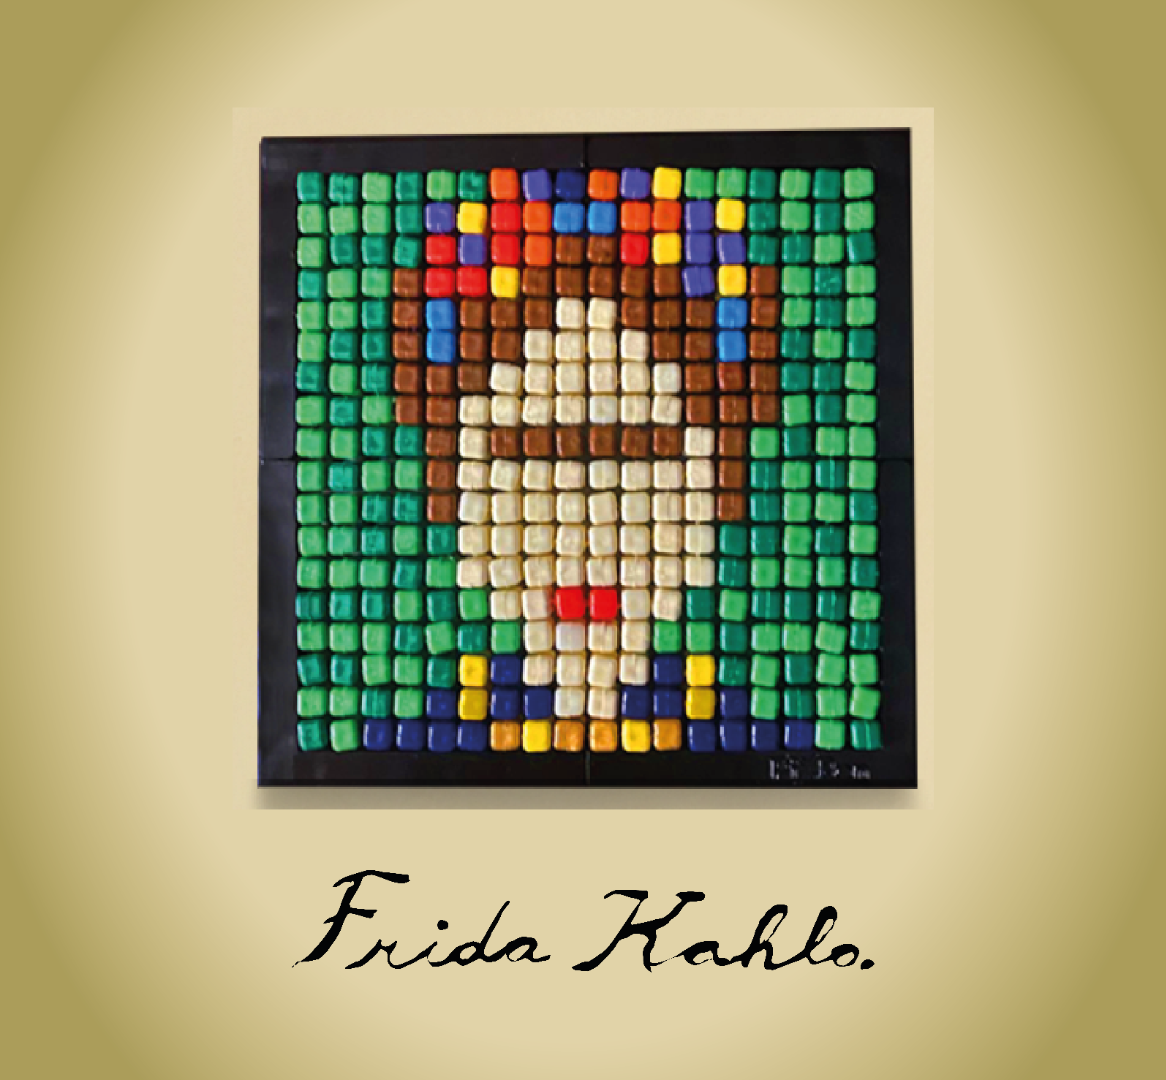 Pixbon Flexi - Frida Kahlo - PFS1007